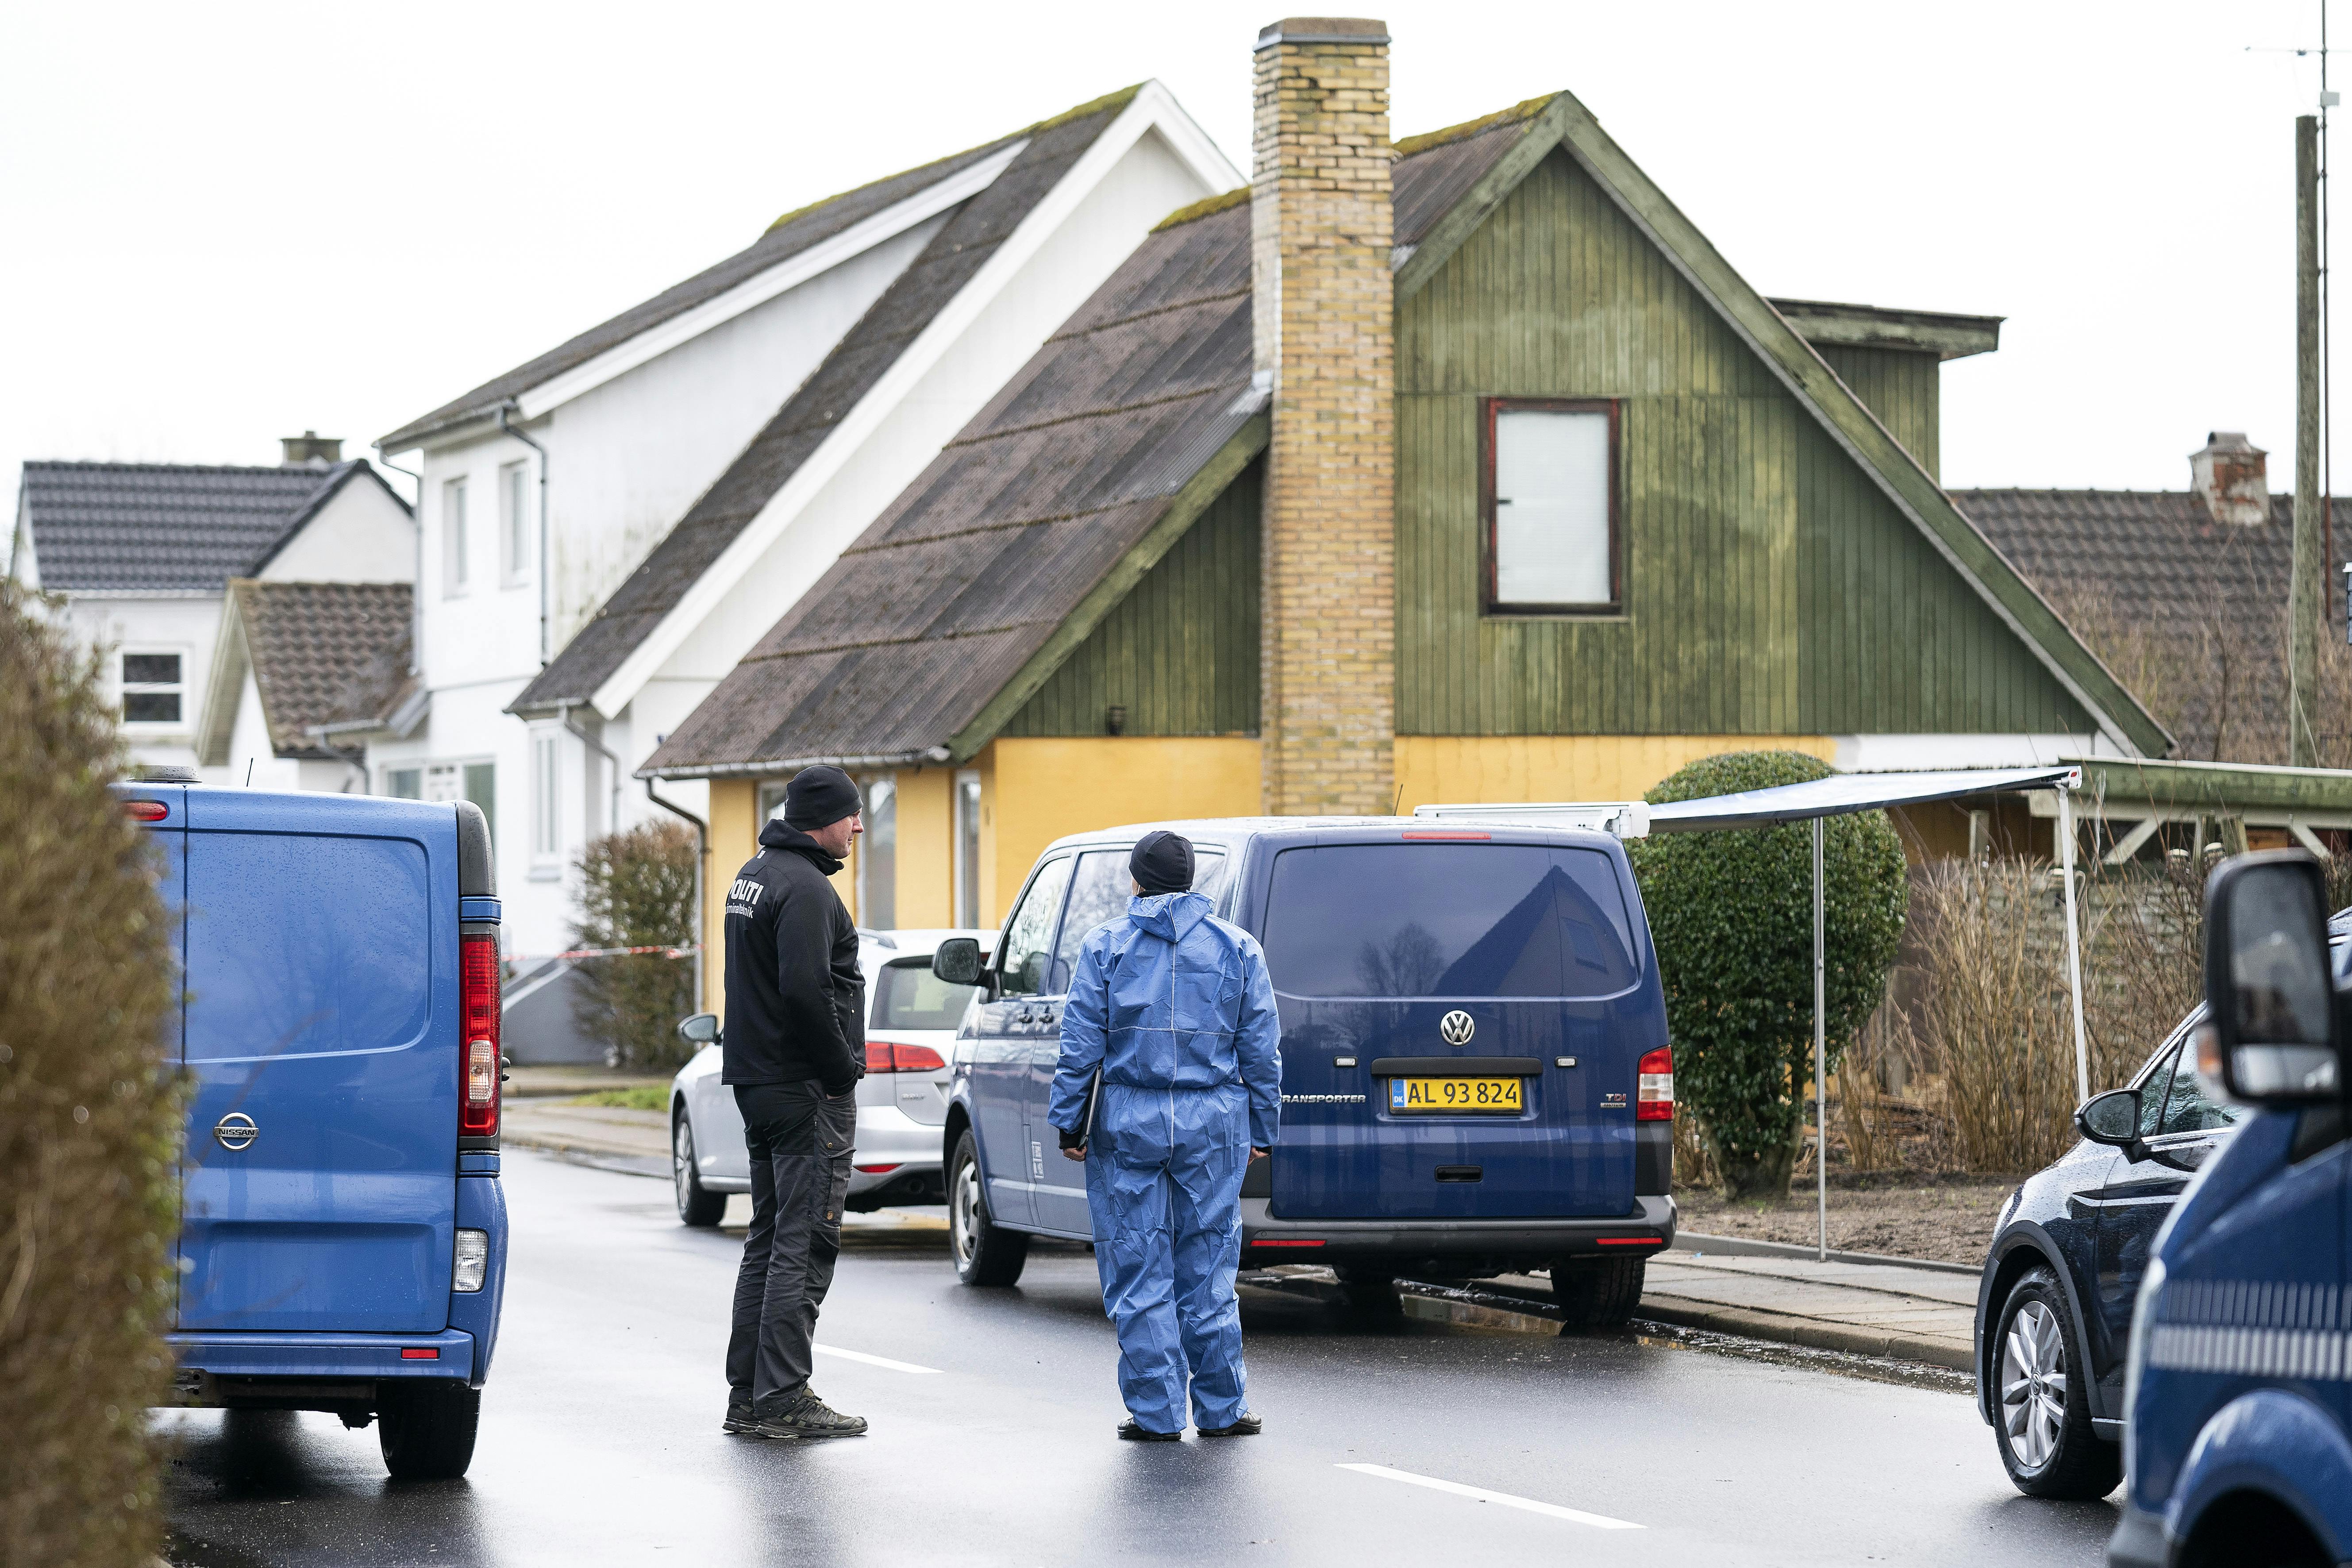 Politiet arbejdede længe og intensivt på adressen i Flauenskjold. Hvad de præcis fandt i huset er endnu uvist.
&nbsp;
